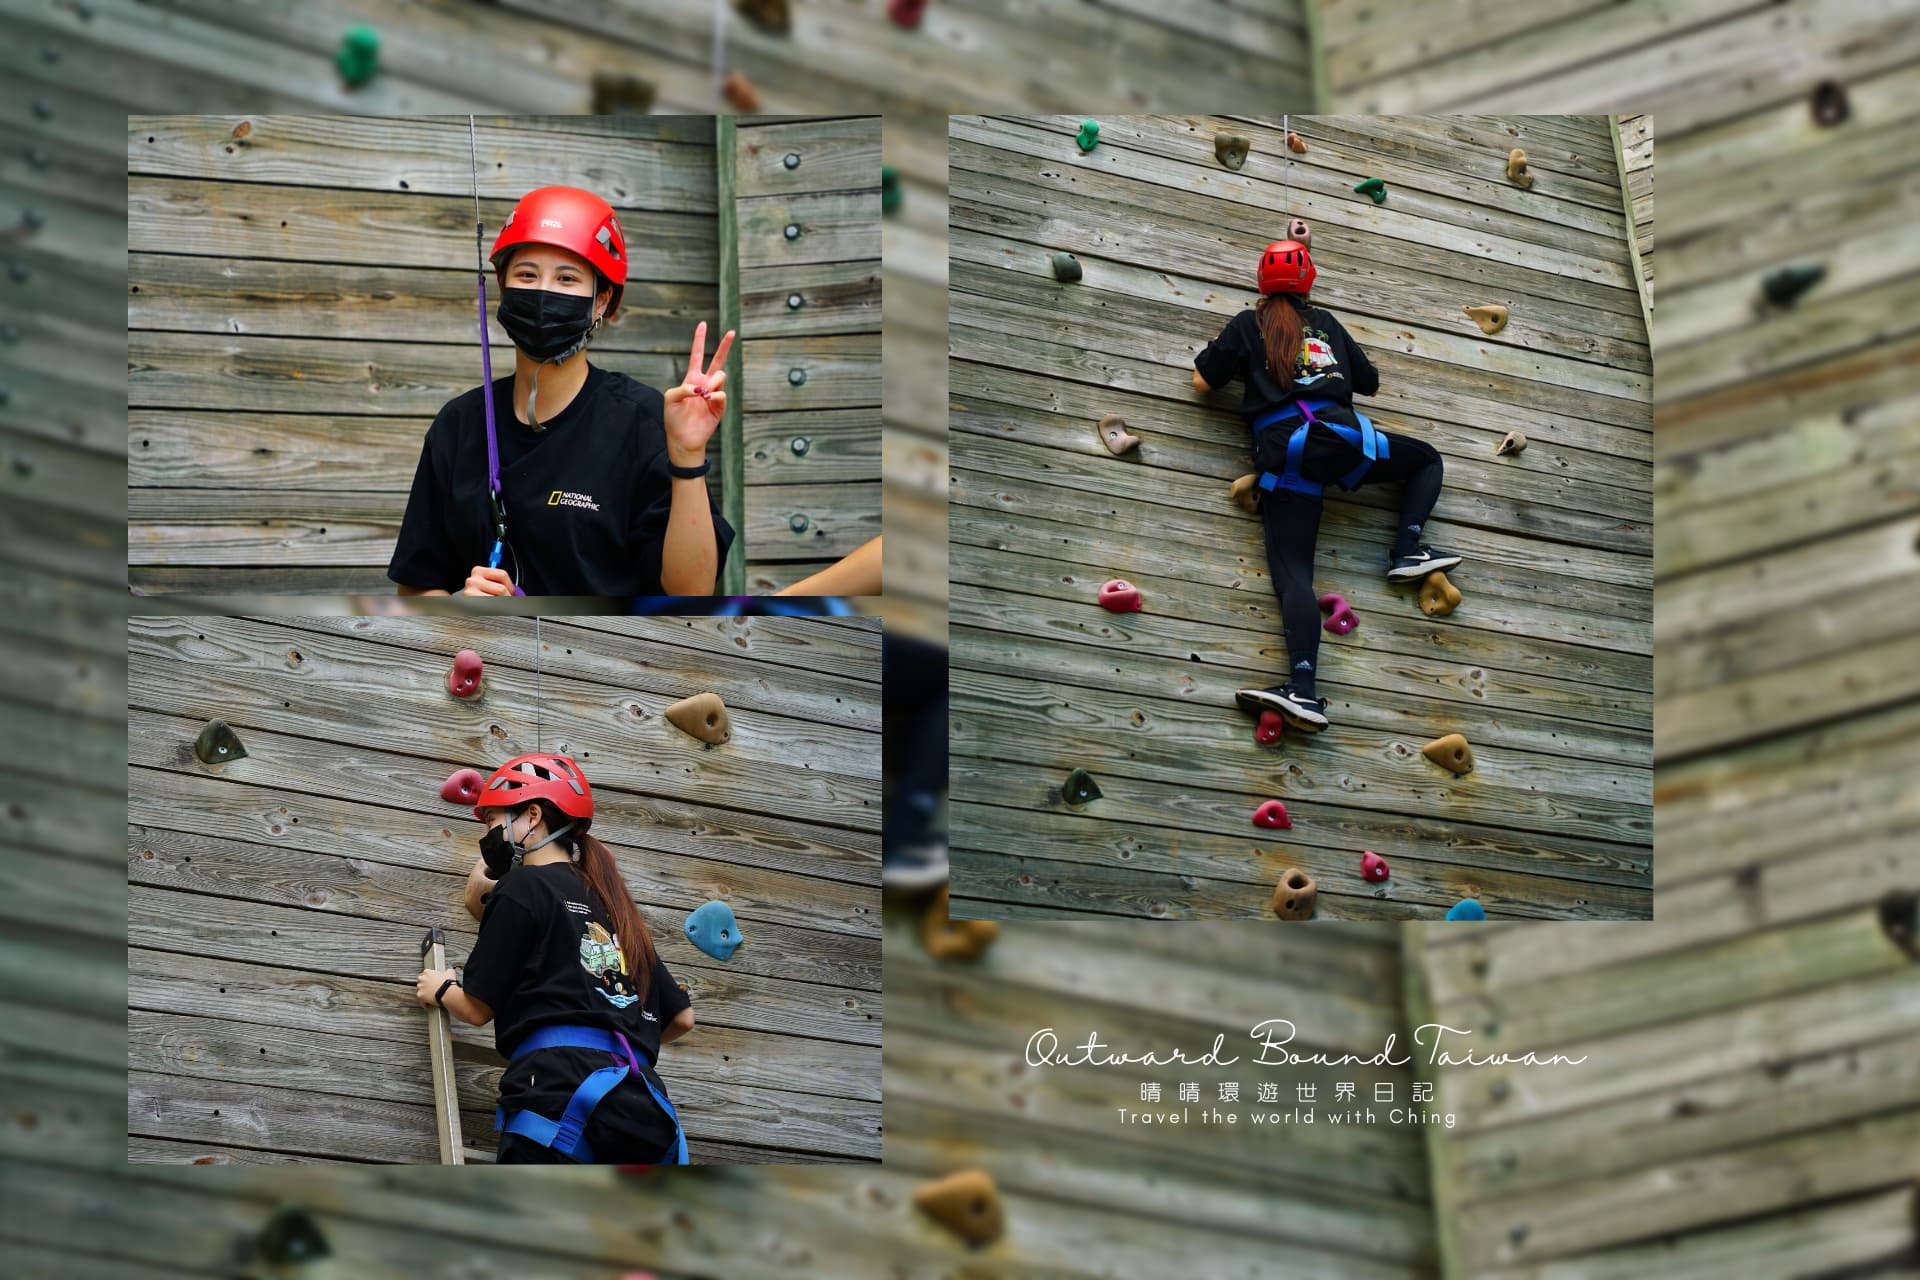 【跨出舒適圈 一日冒險挑戰】台灣外展基金會(OBT)課程超好玩(繩索、攀岩)